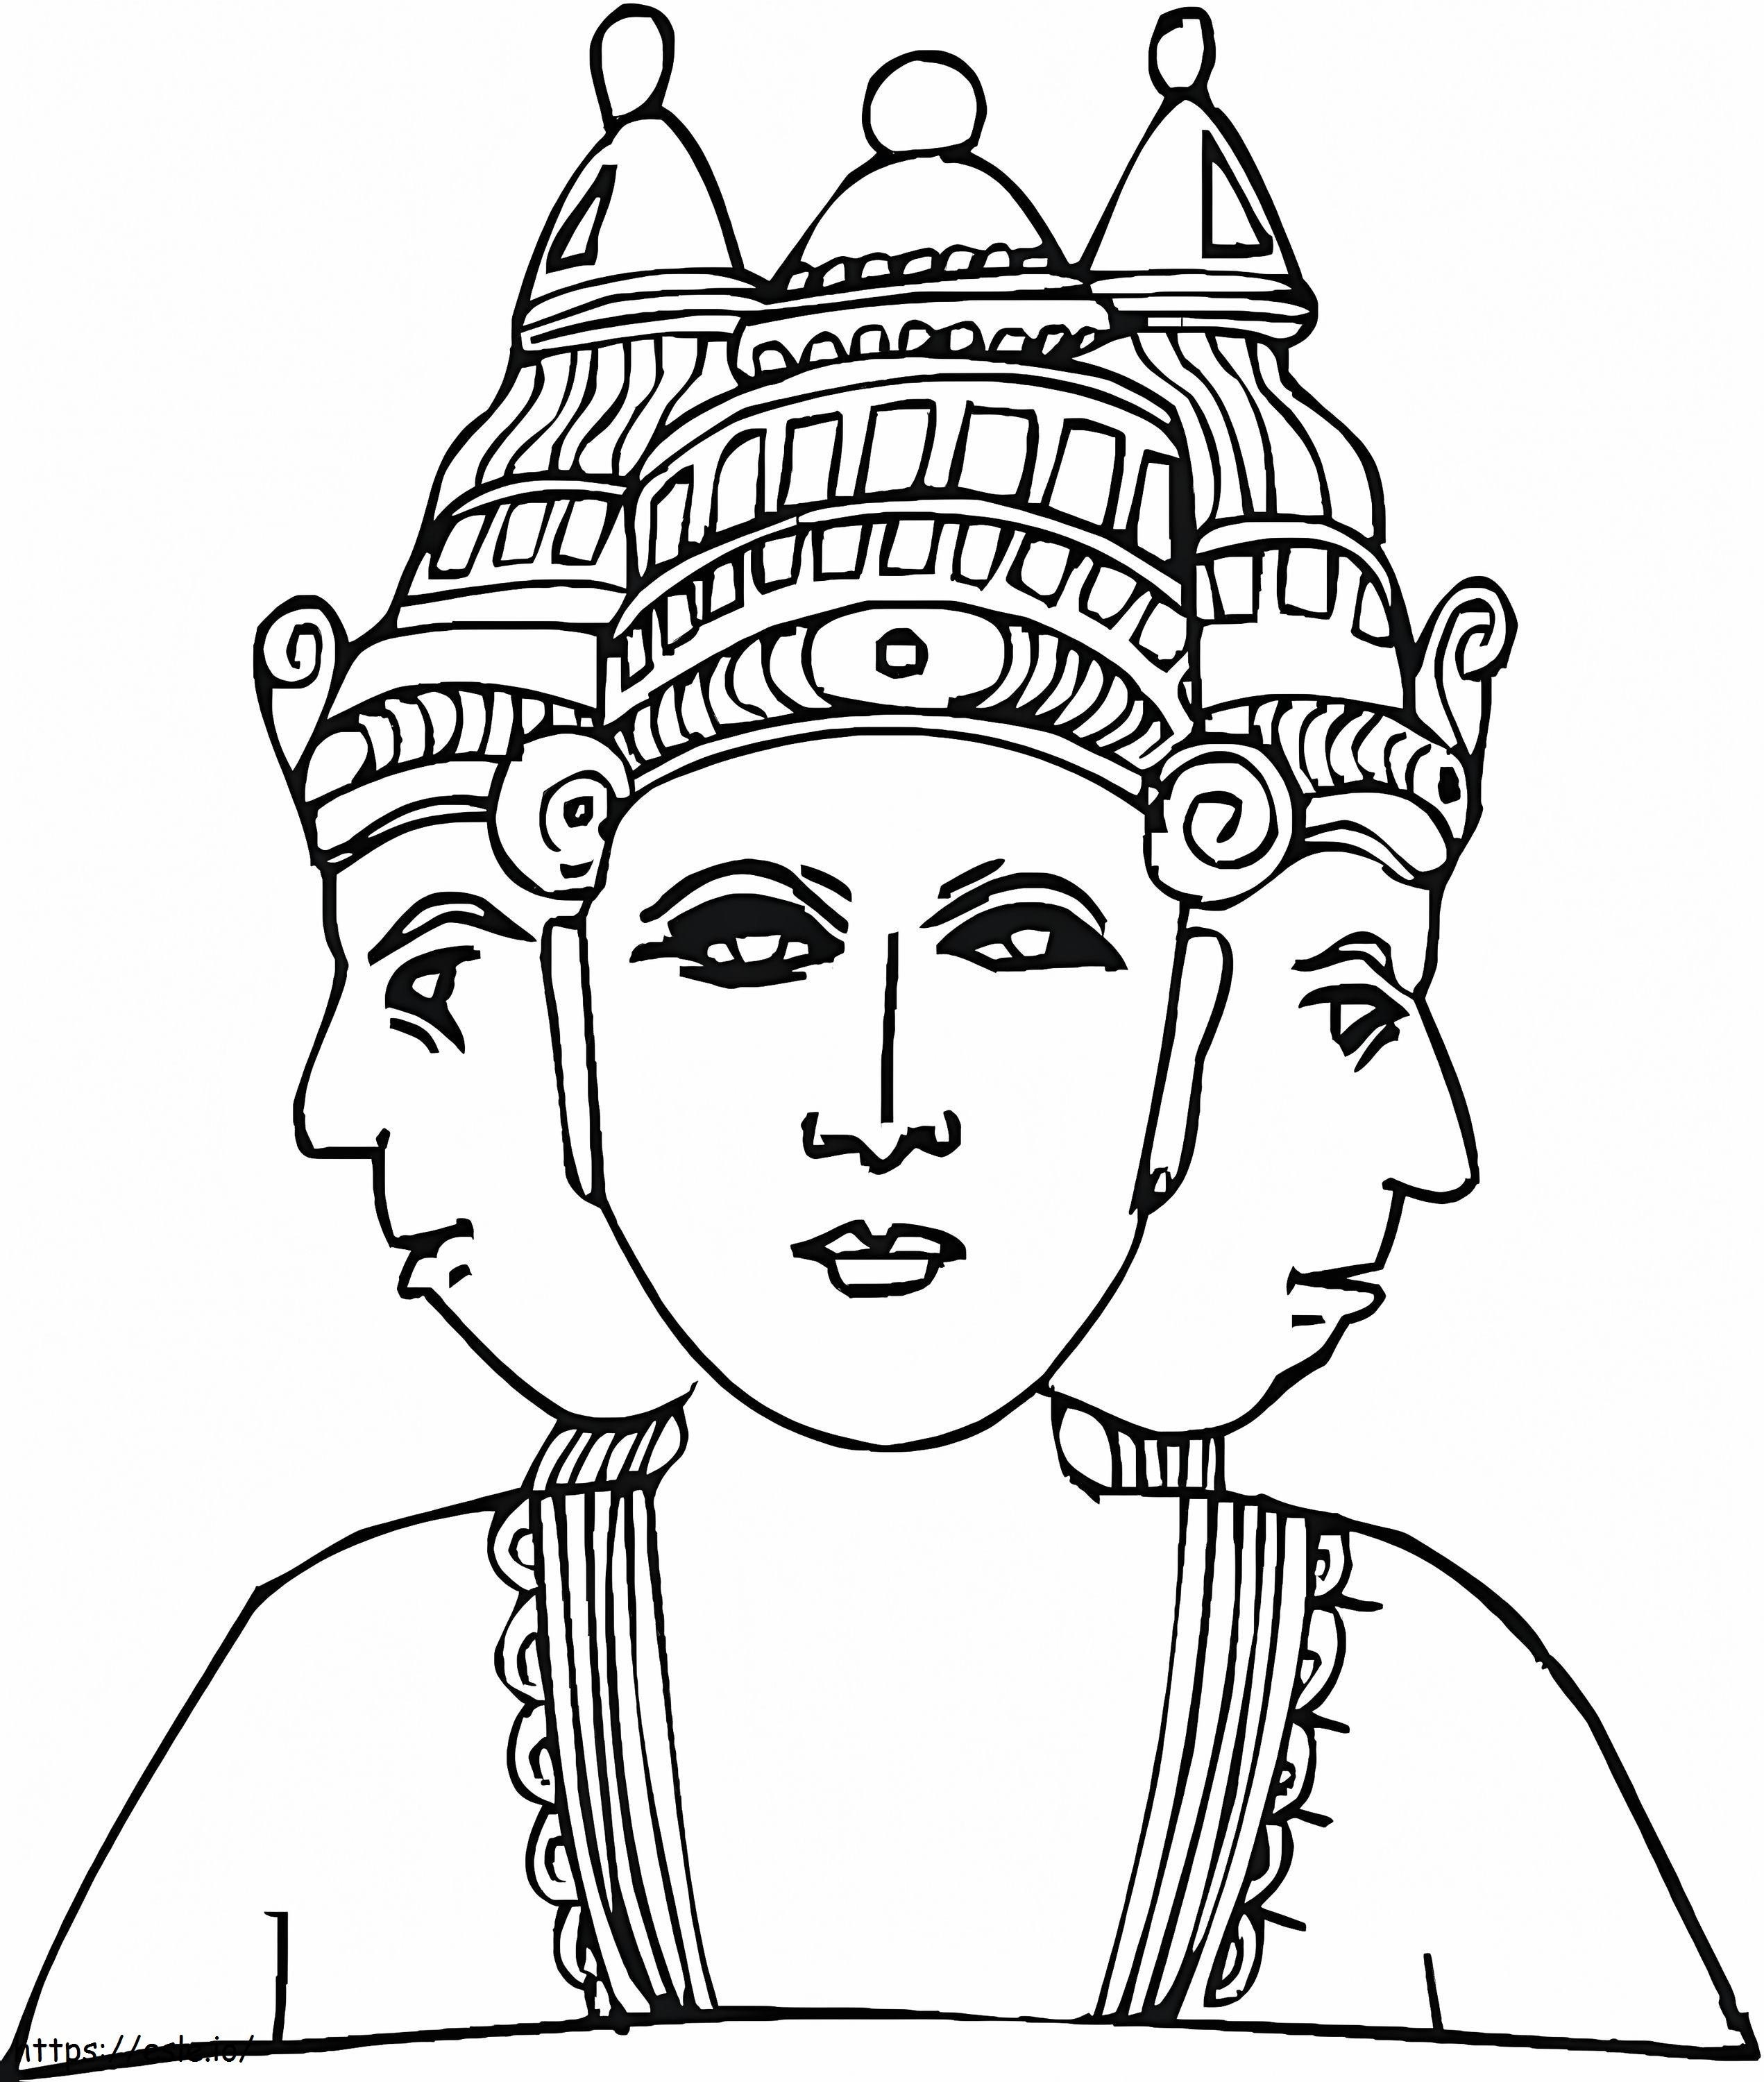 Üç Başlı Hindu Tanrısı boyama